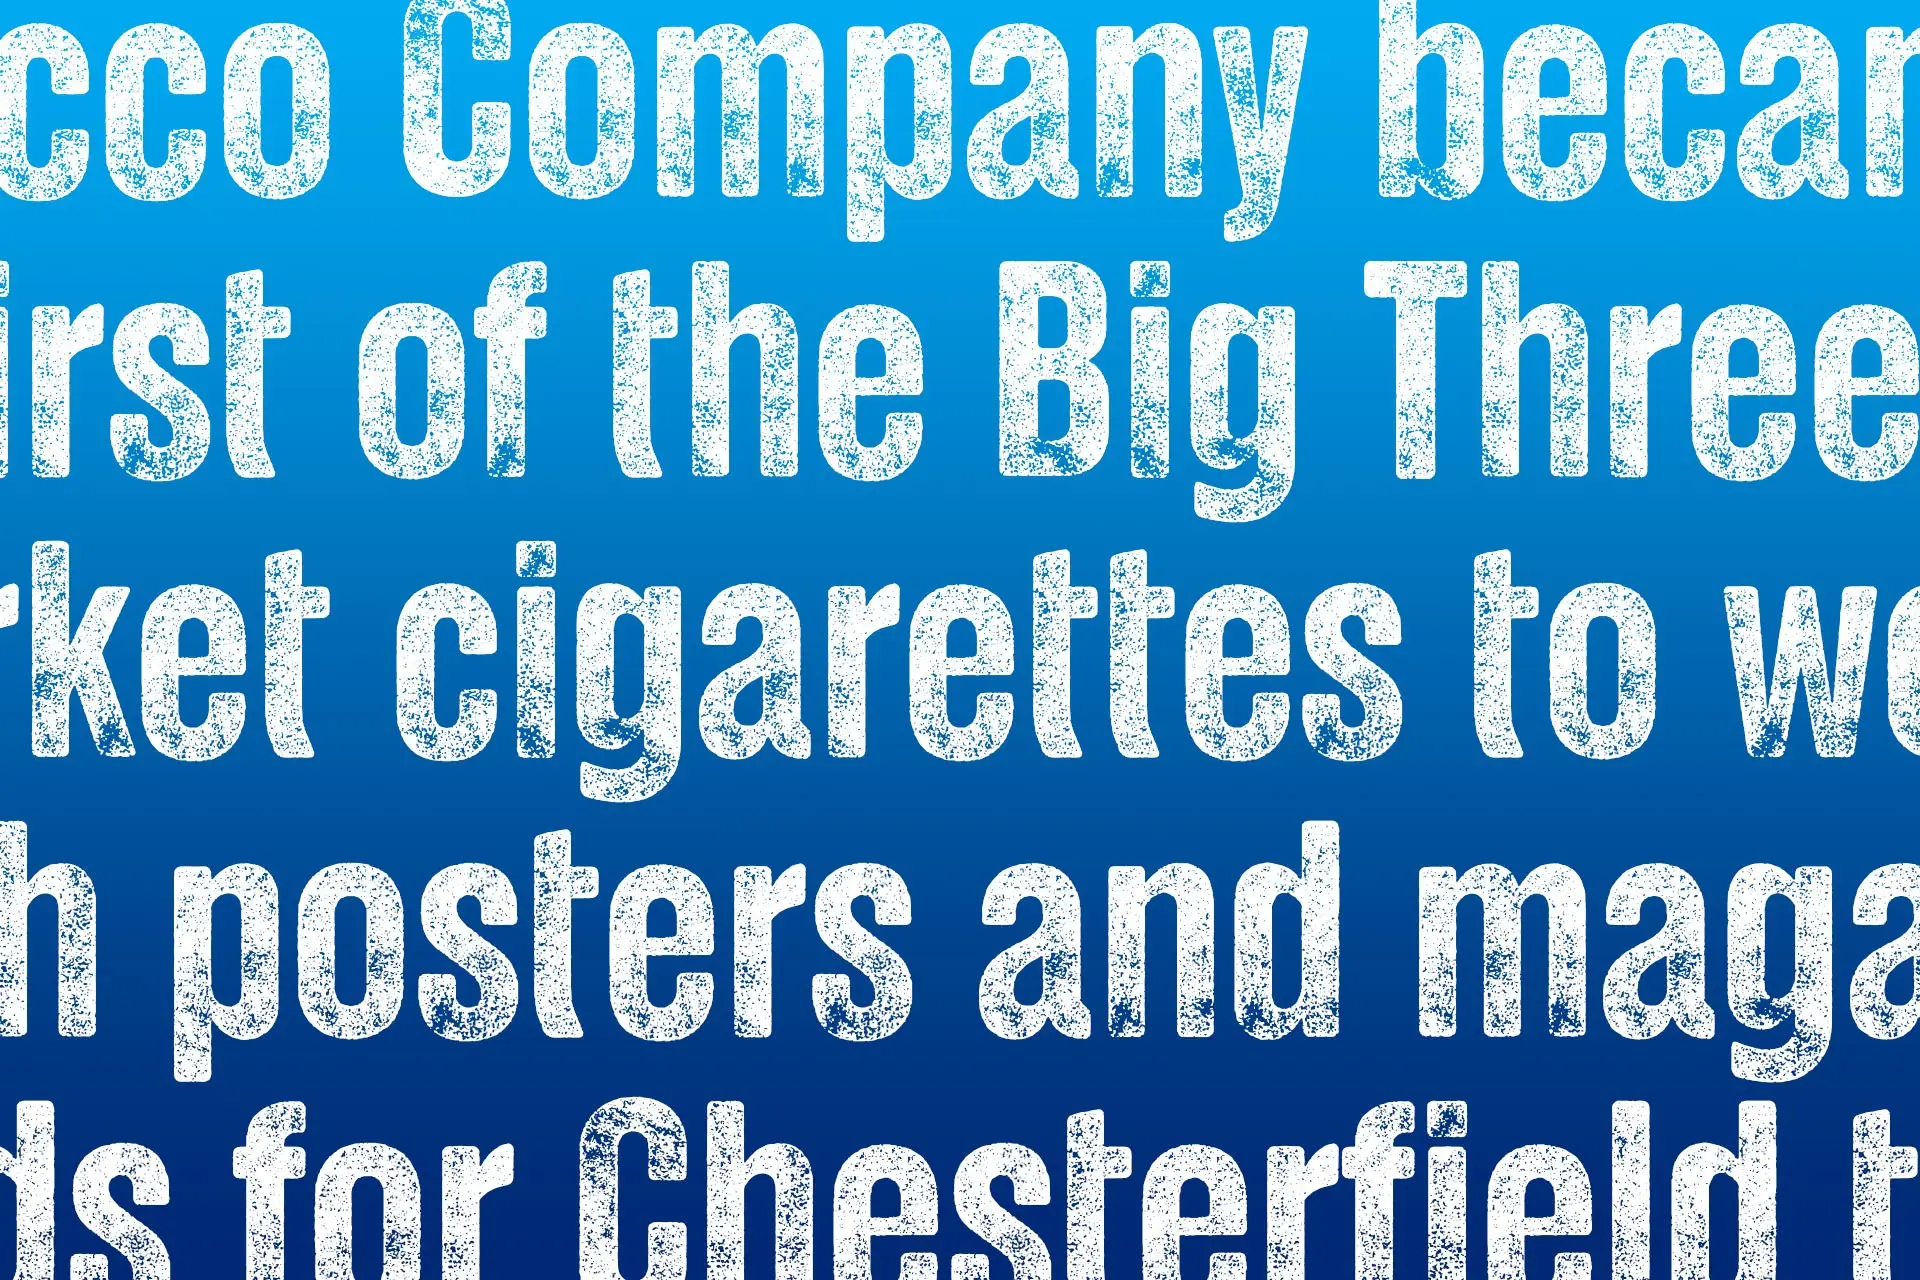 ChesterPress en uso con frase sobre la marca y producto de Chesterfield